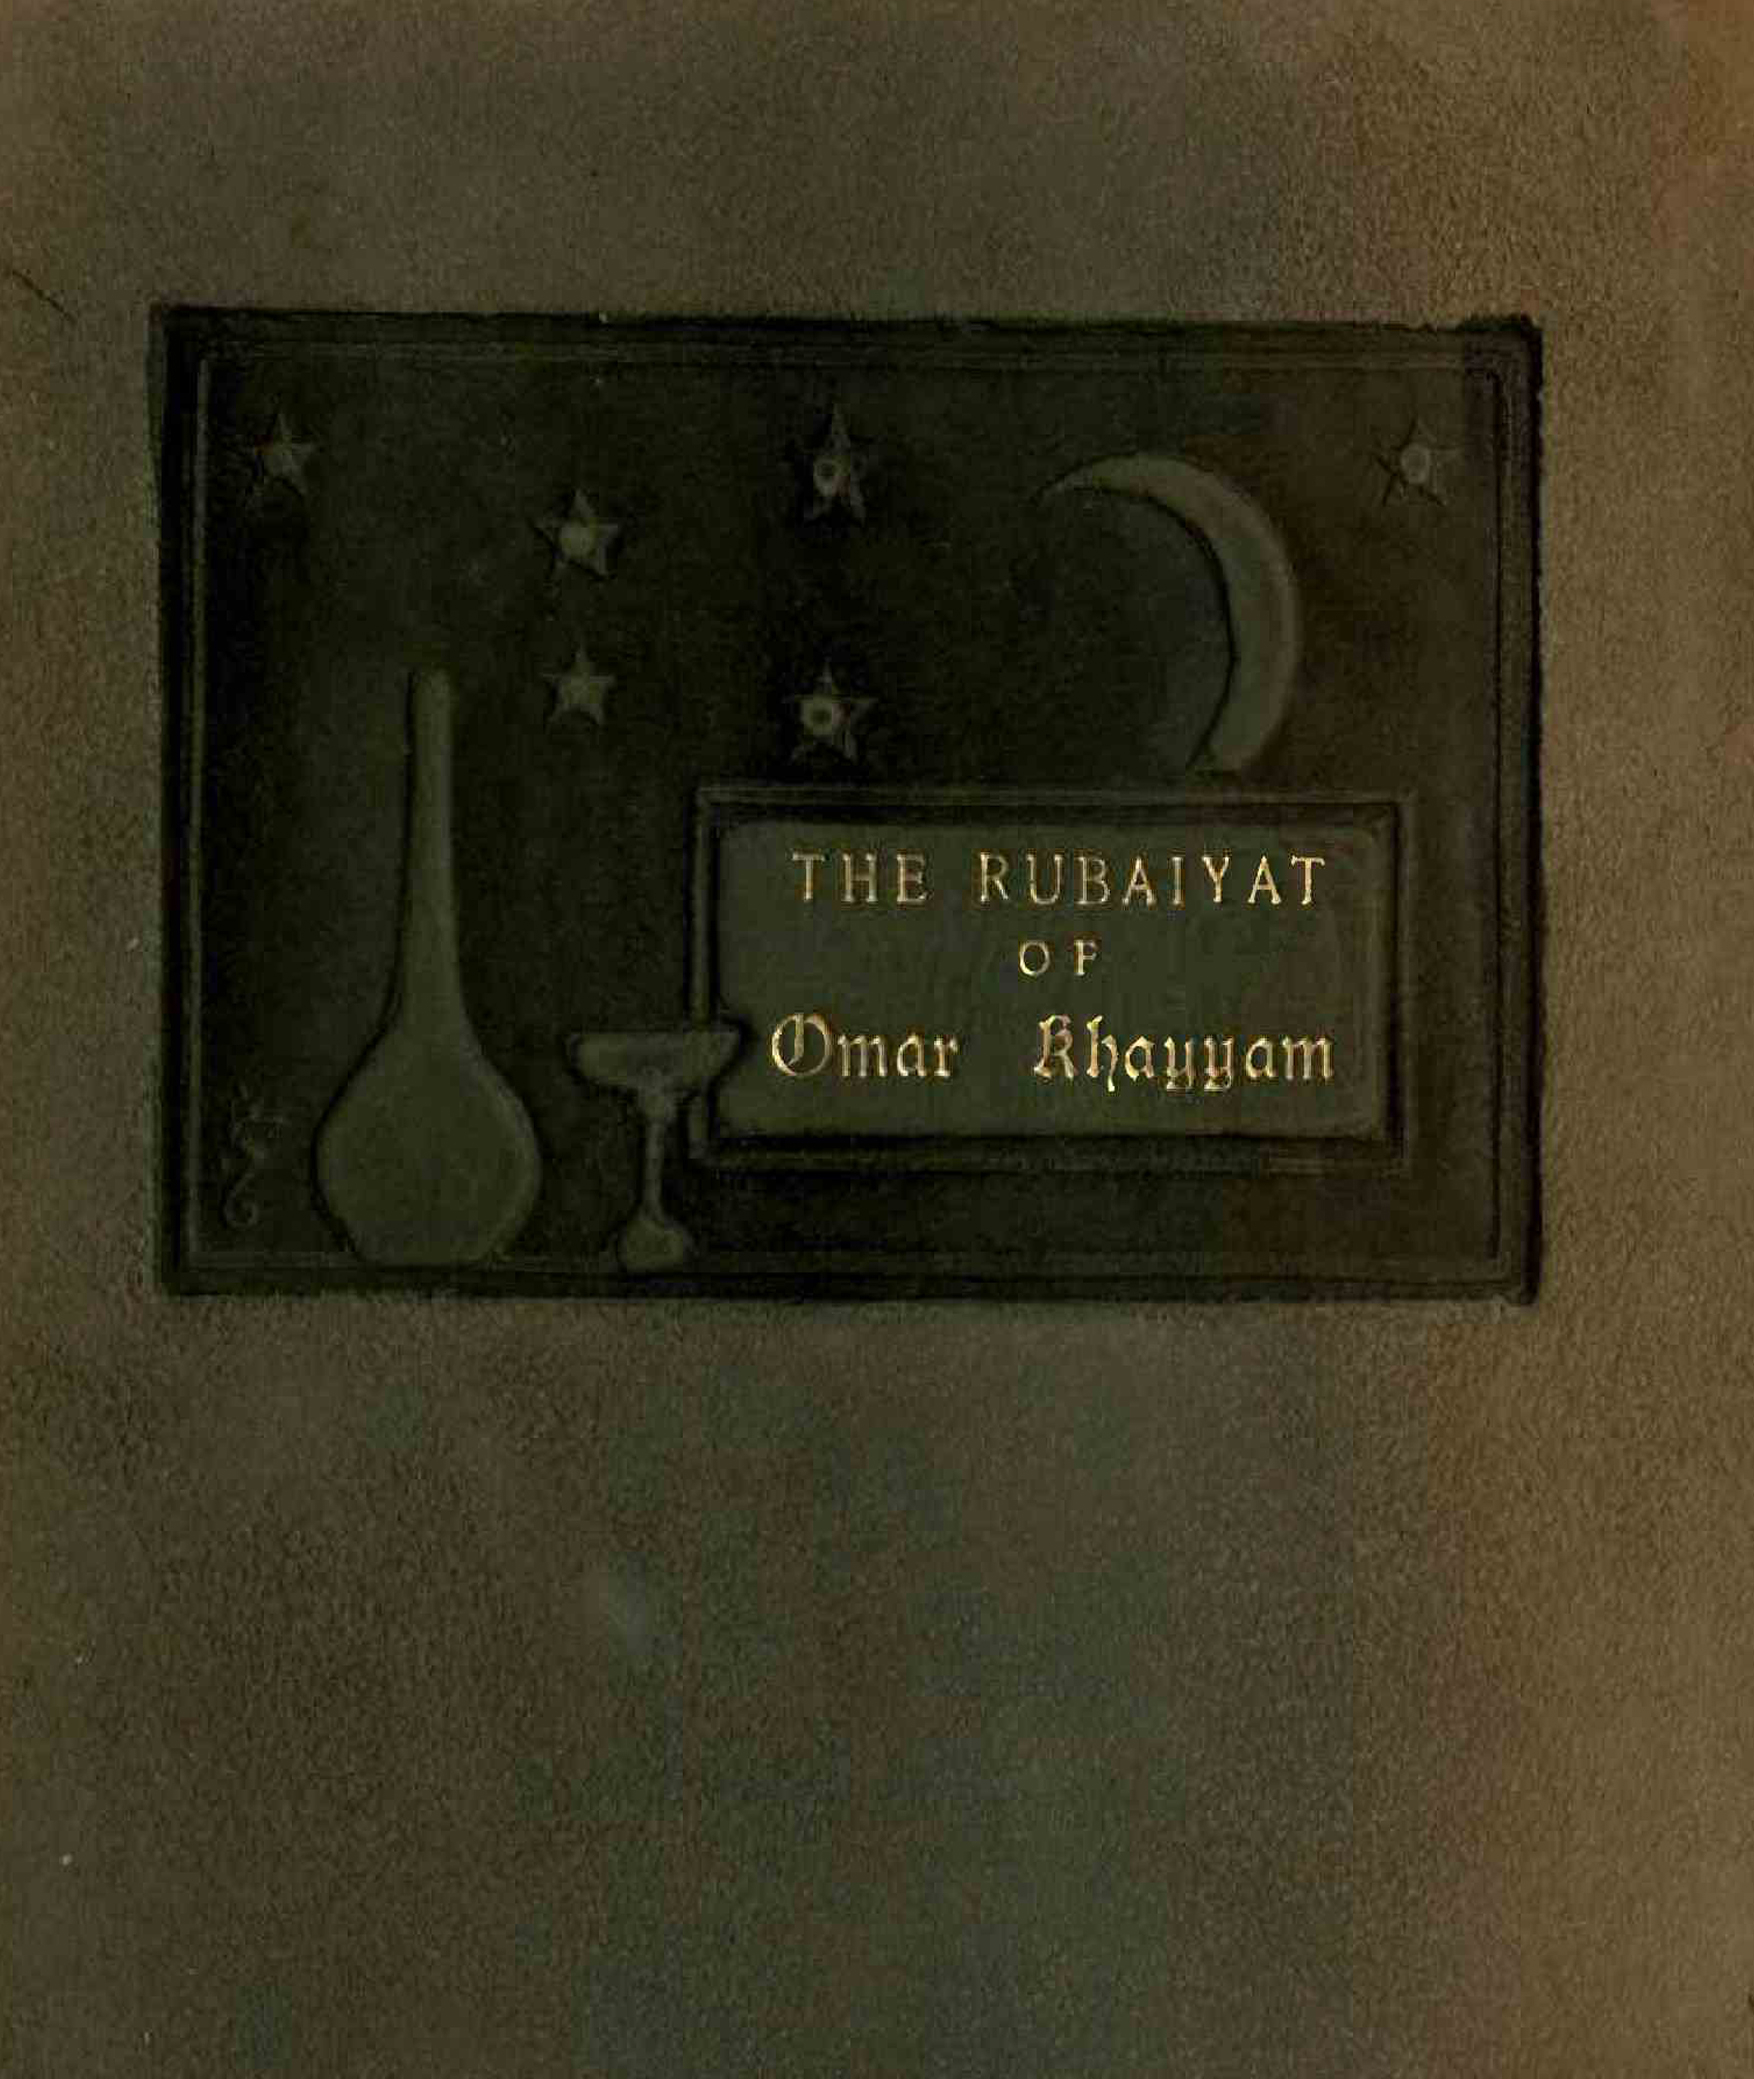 The Rubaiyat of Umar Khayyam